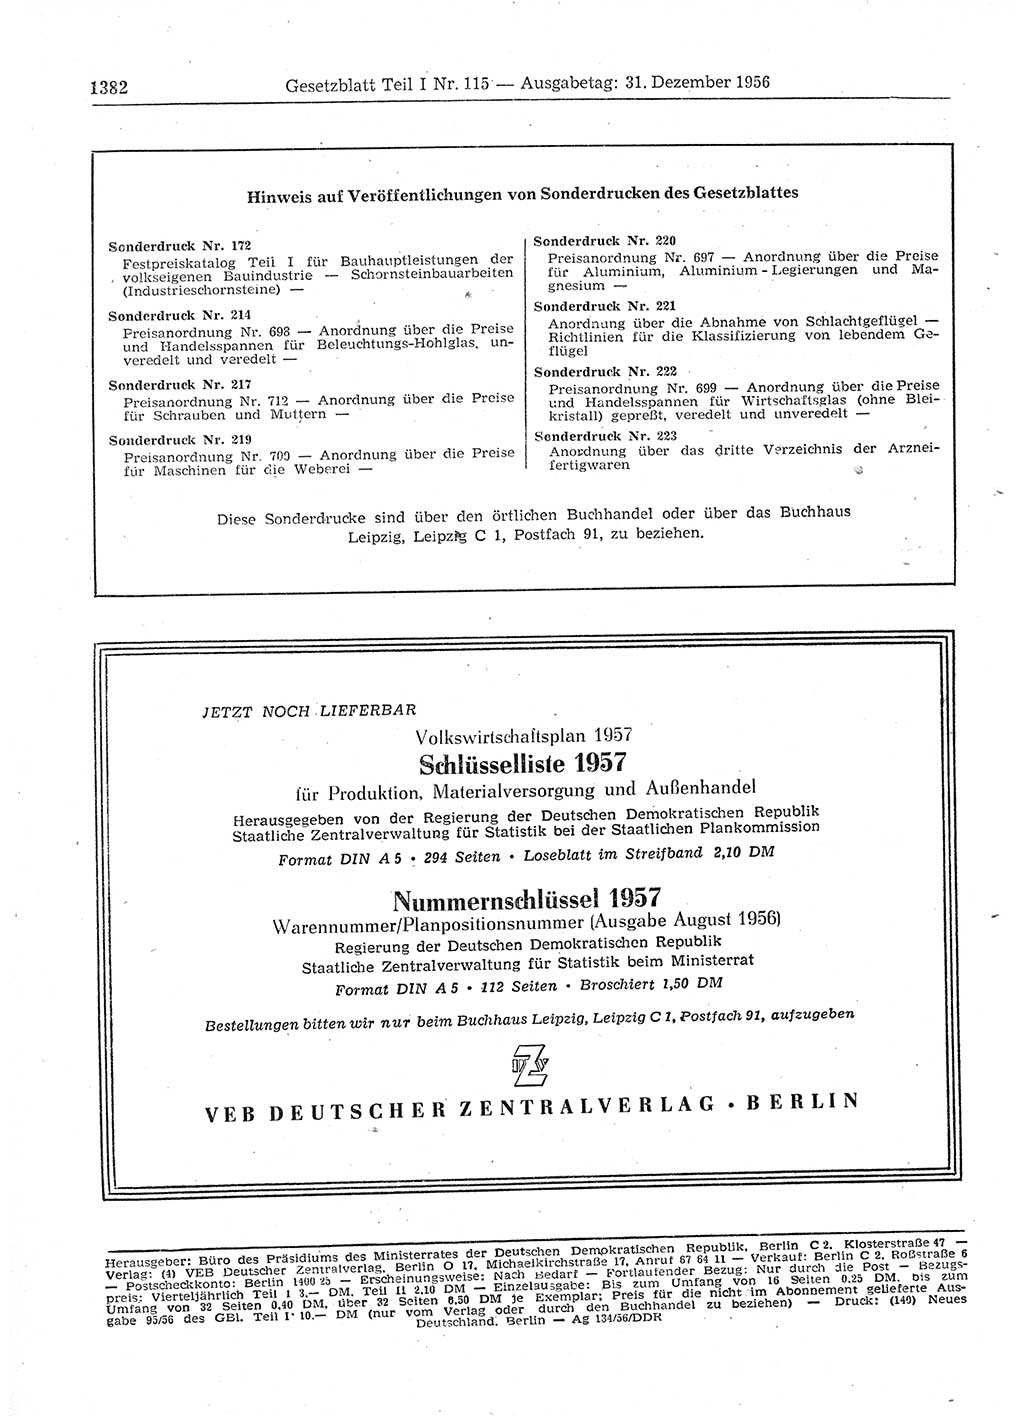 Gesetzblatt (GBl.) der Deutschen Demokratischen Republik (DDR) Teil Ⅰ 1956, Seite 1382 (GBl. DDR Ⅰ 1956, S. 1382)